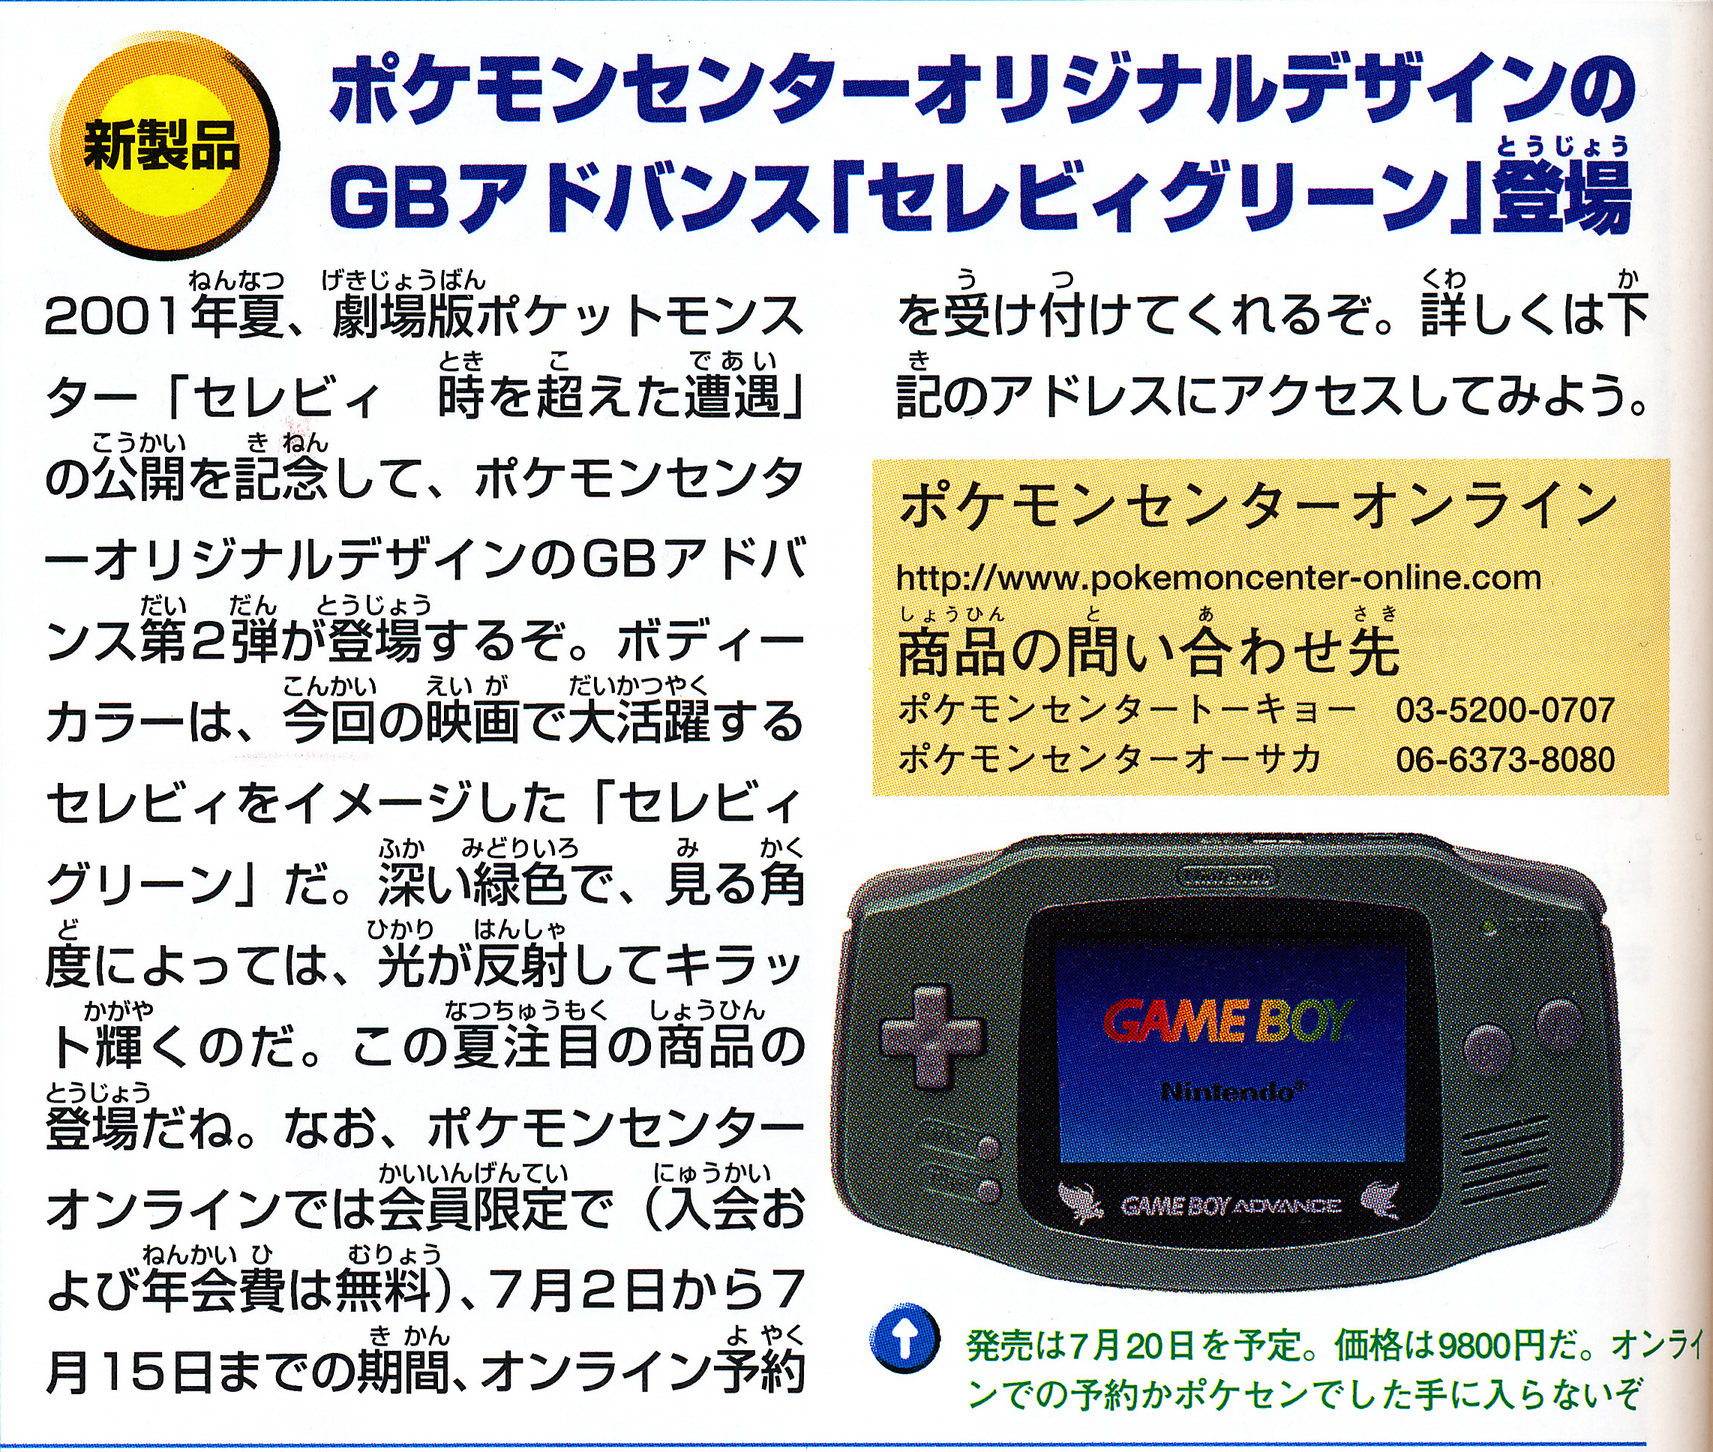 Nintendo Game Boy Advance Pokemon Celebi Console